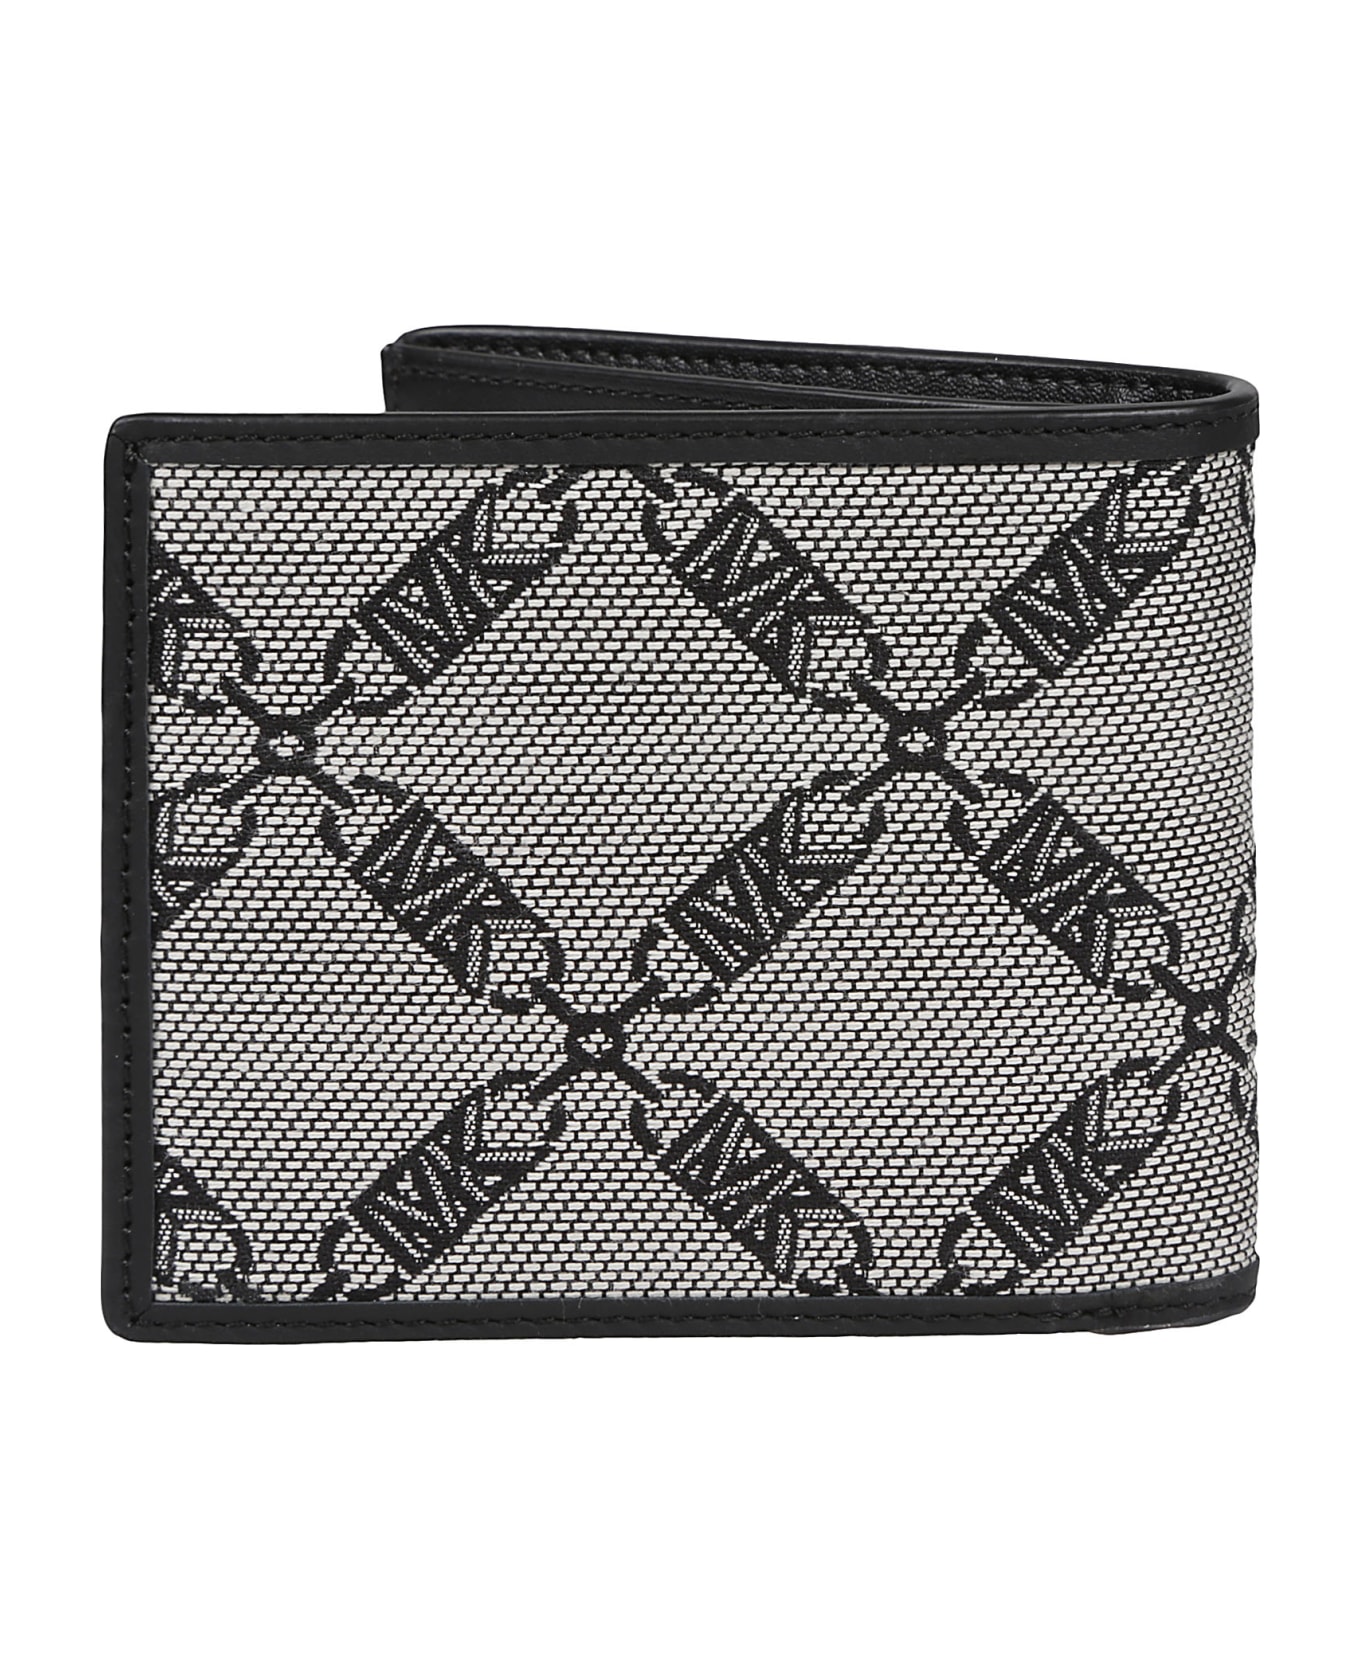 Michael Kors Wallet - Black 財布